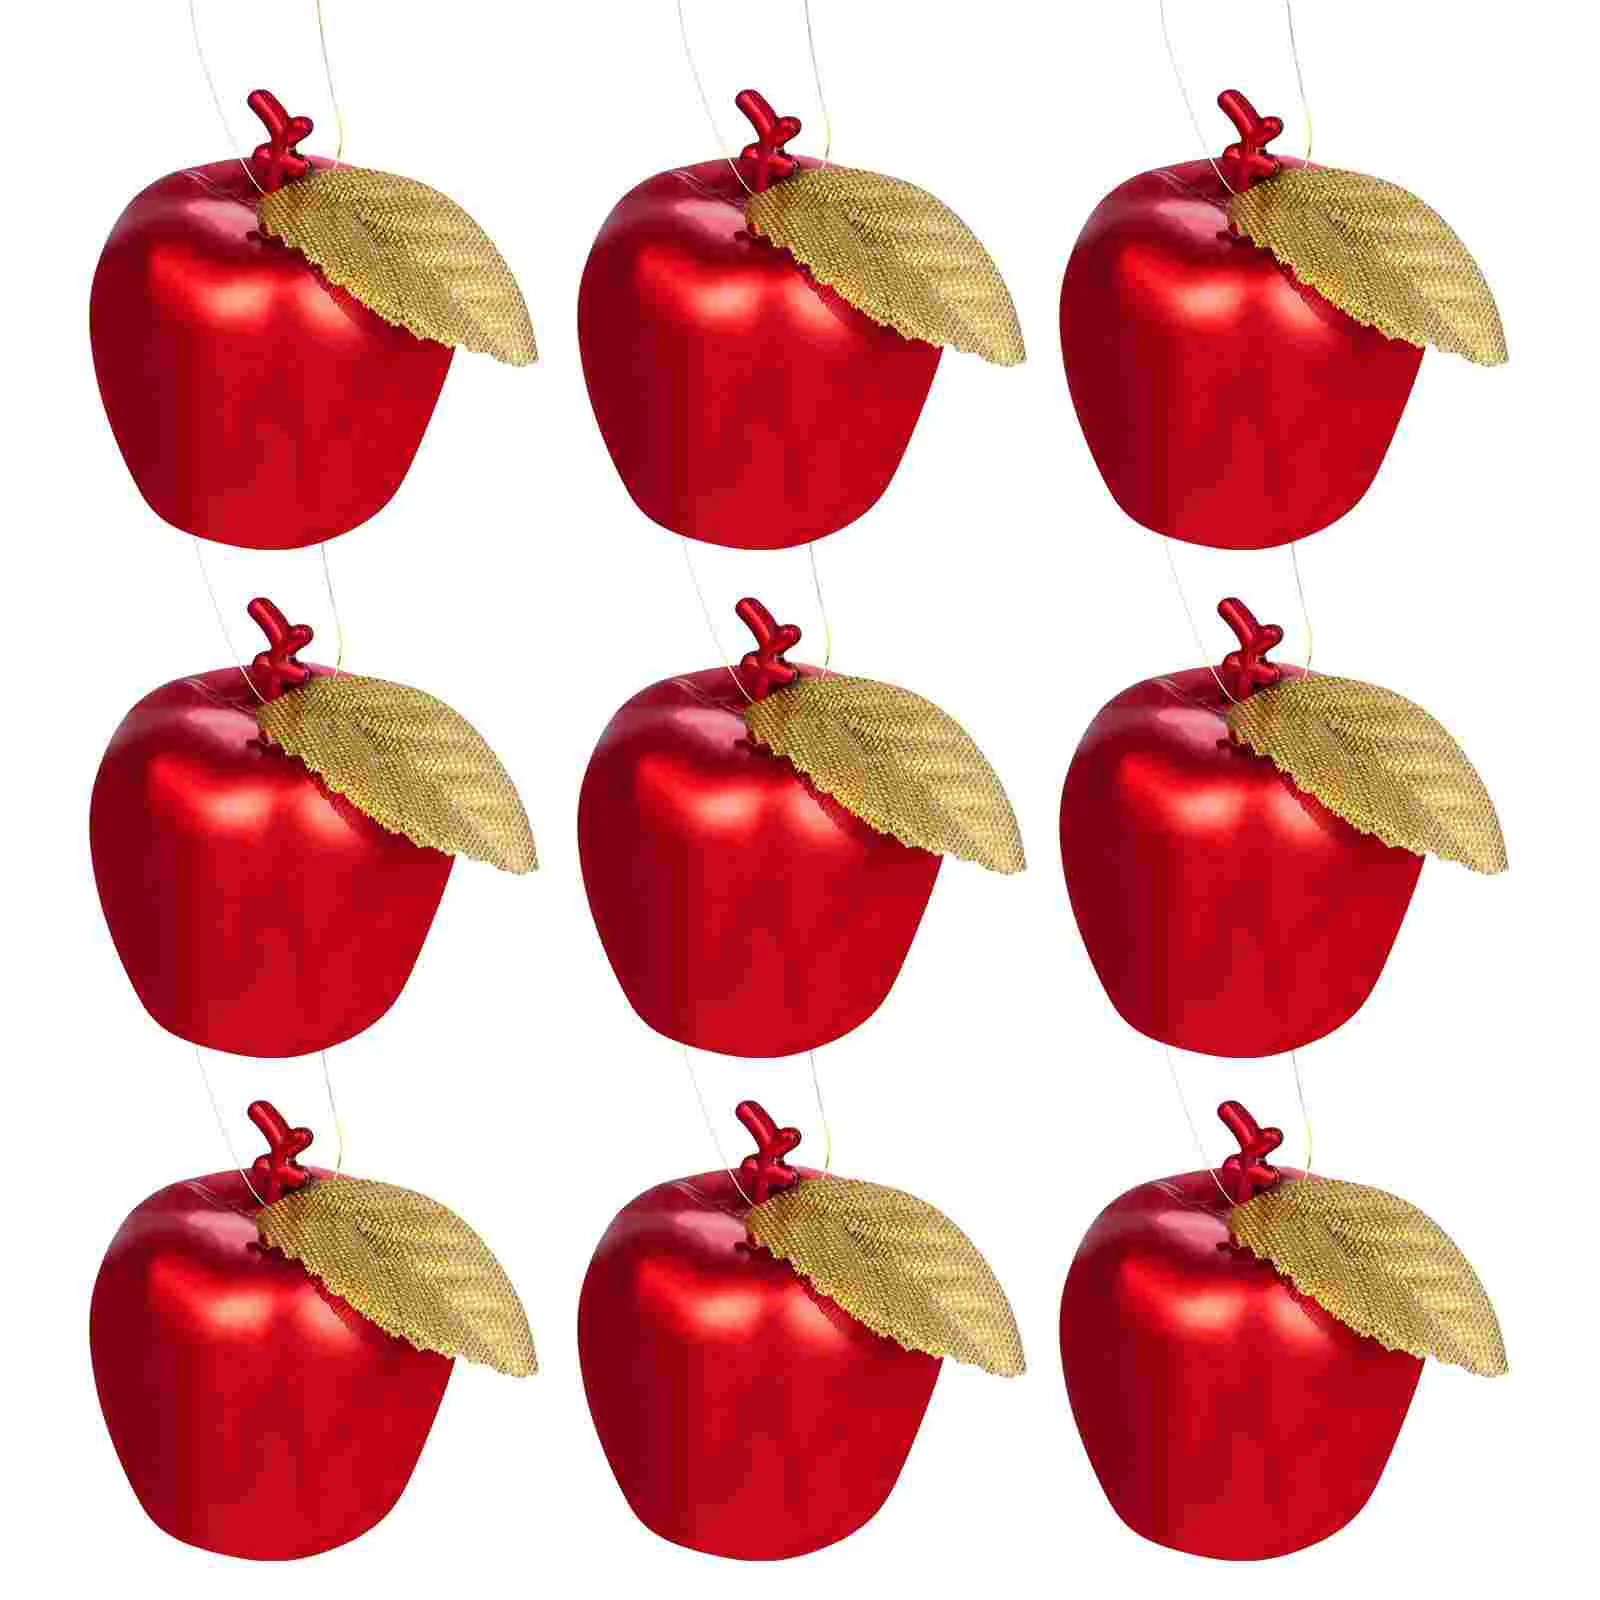 Купи Ornaments Christmas Tree Apple Red Apples Hanging Decorations Pendants Ornament Making Wreath Pendant Simulation Mini Shaped за 315 рублей в магазине AliExpress